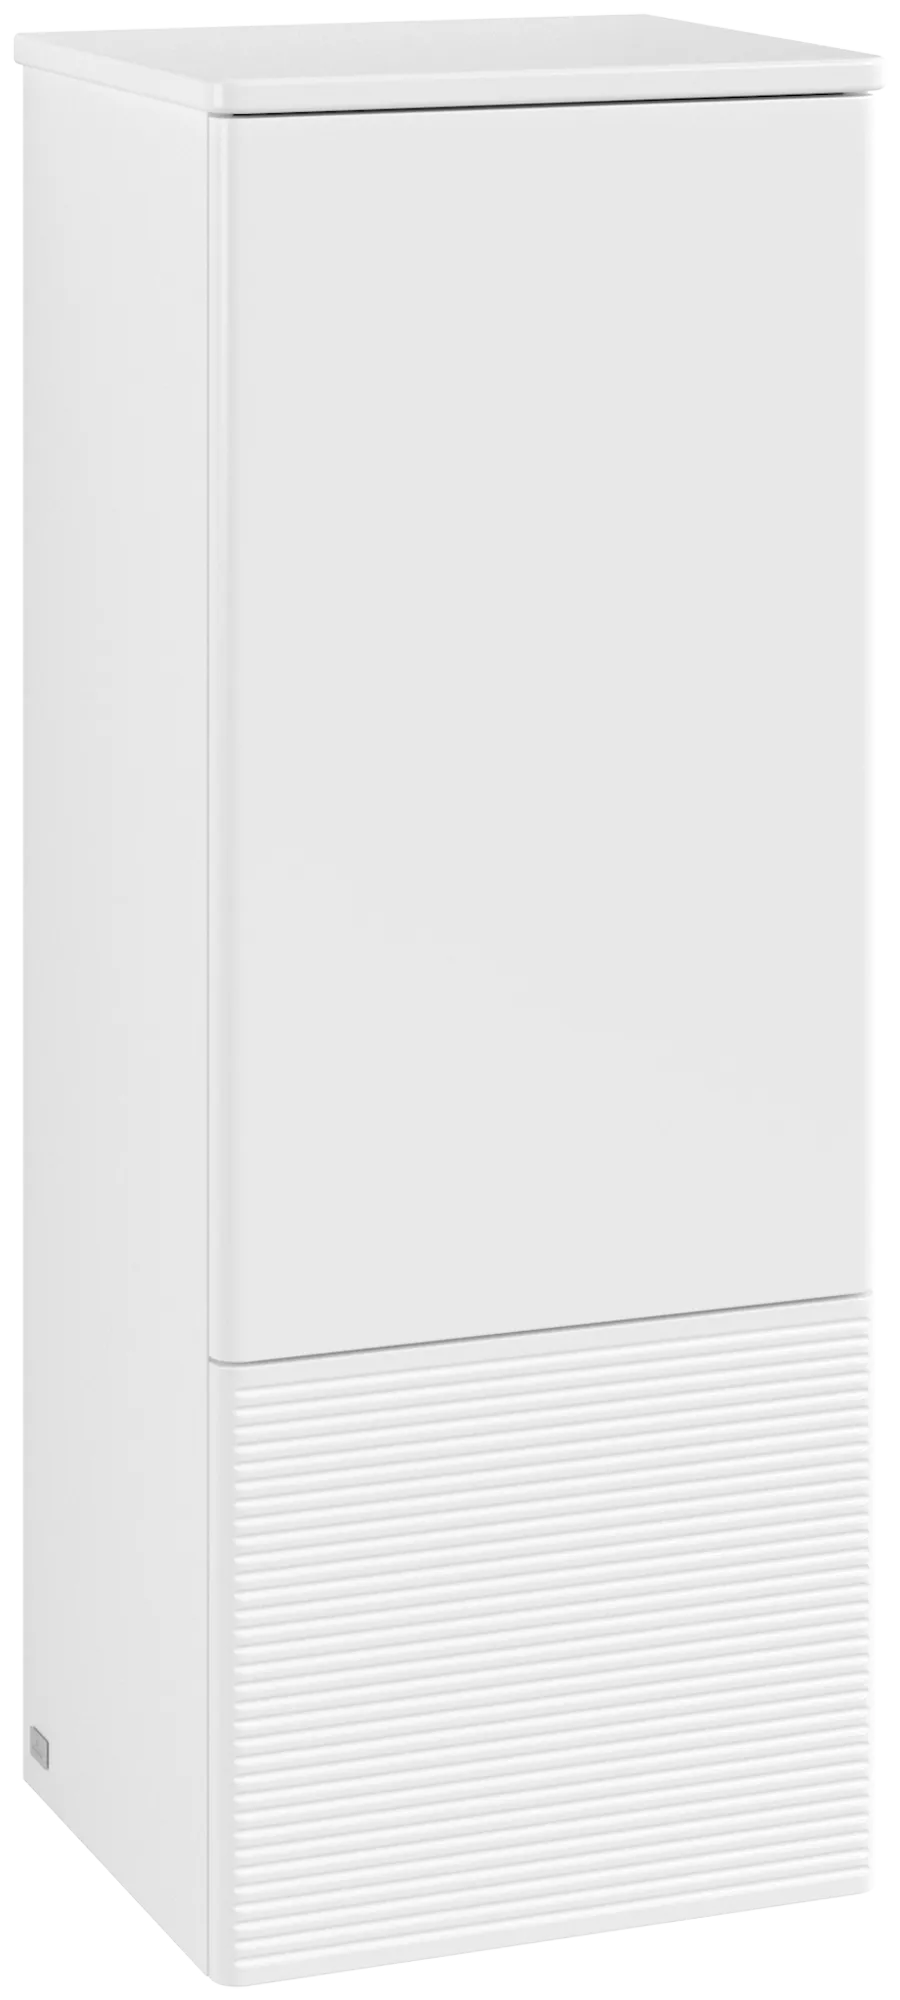 Bild von VILLEROY BOCH Antao Mittelschrank, 1 Tür, 414 x 1039 x 356 mm, Front mit Struktur, White Matt Lacquer / White Matt Lacquer #L43100MT